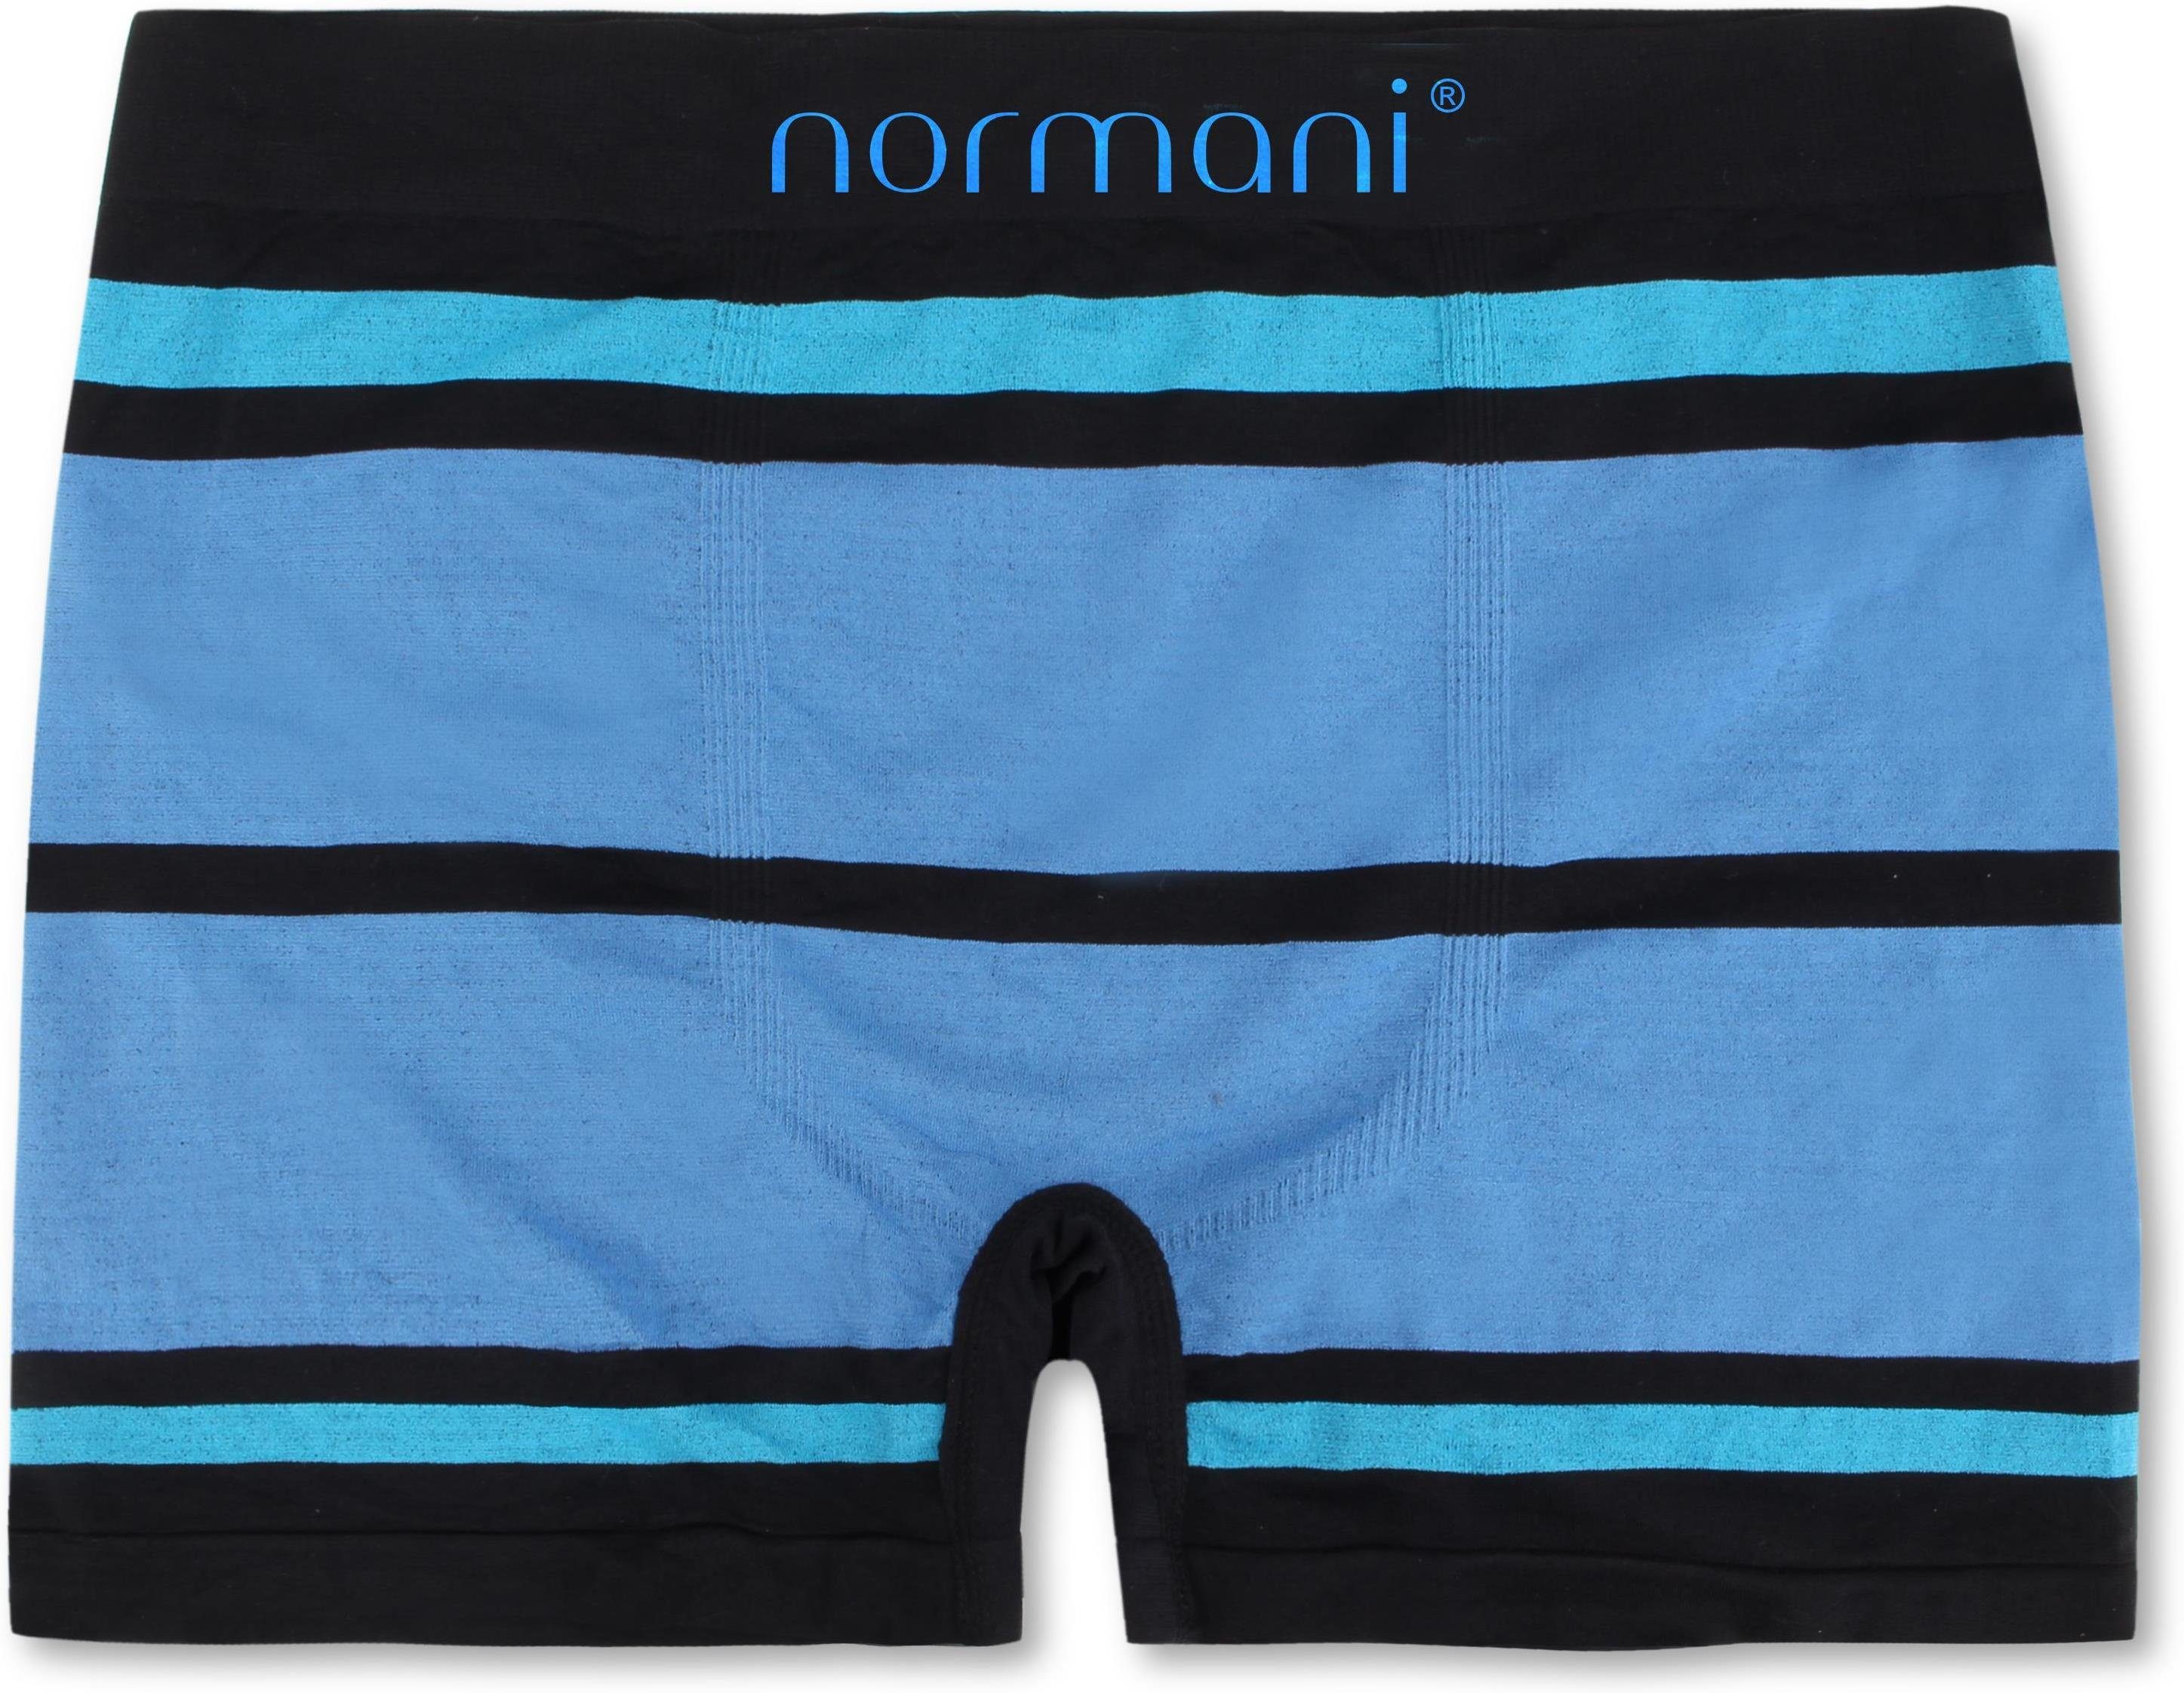 normani Retro Boxer Material Herren schnell Sport trocknendem aus Blau/Hellblau Unterhosen